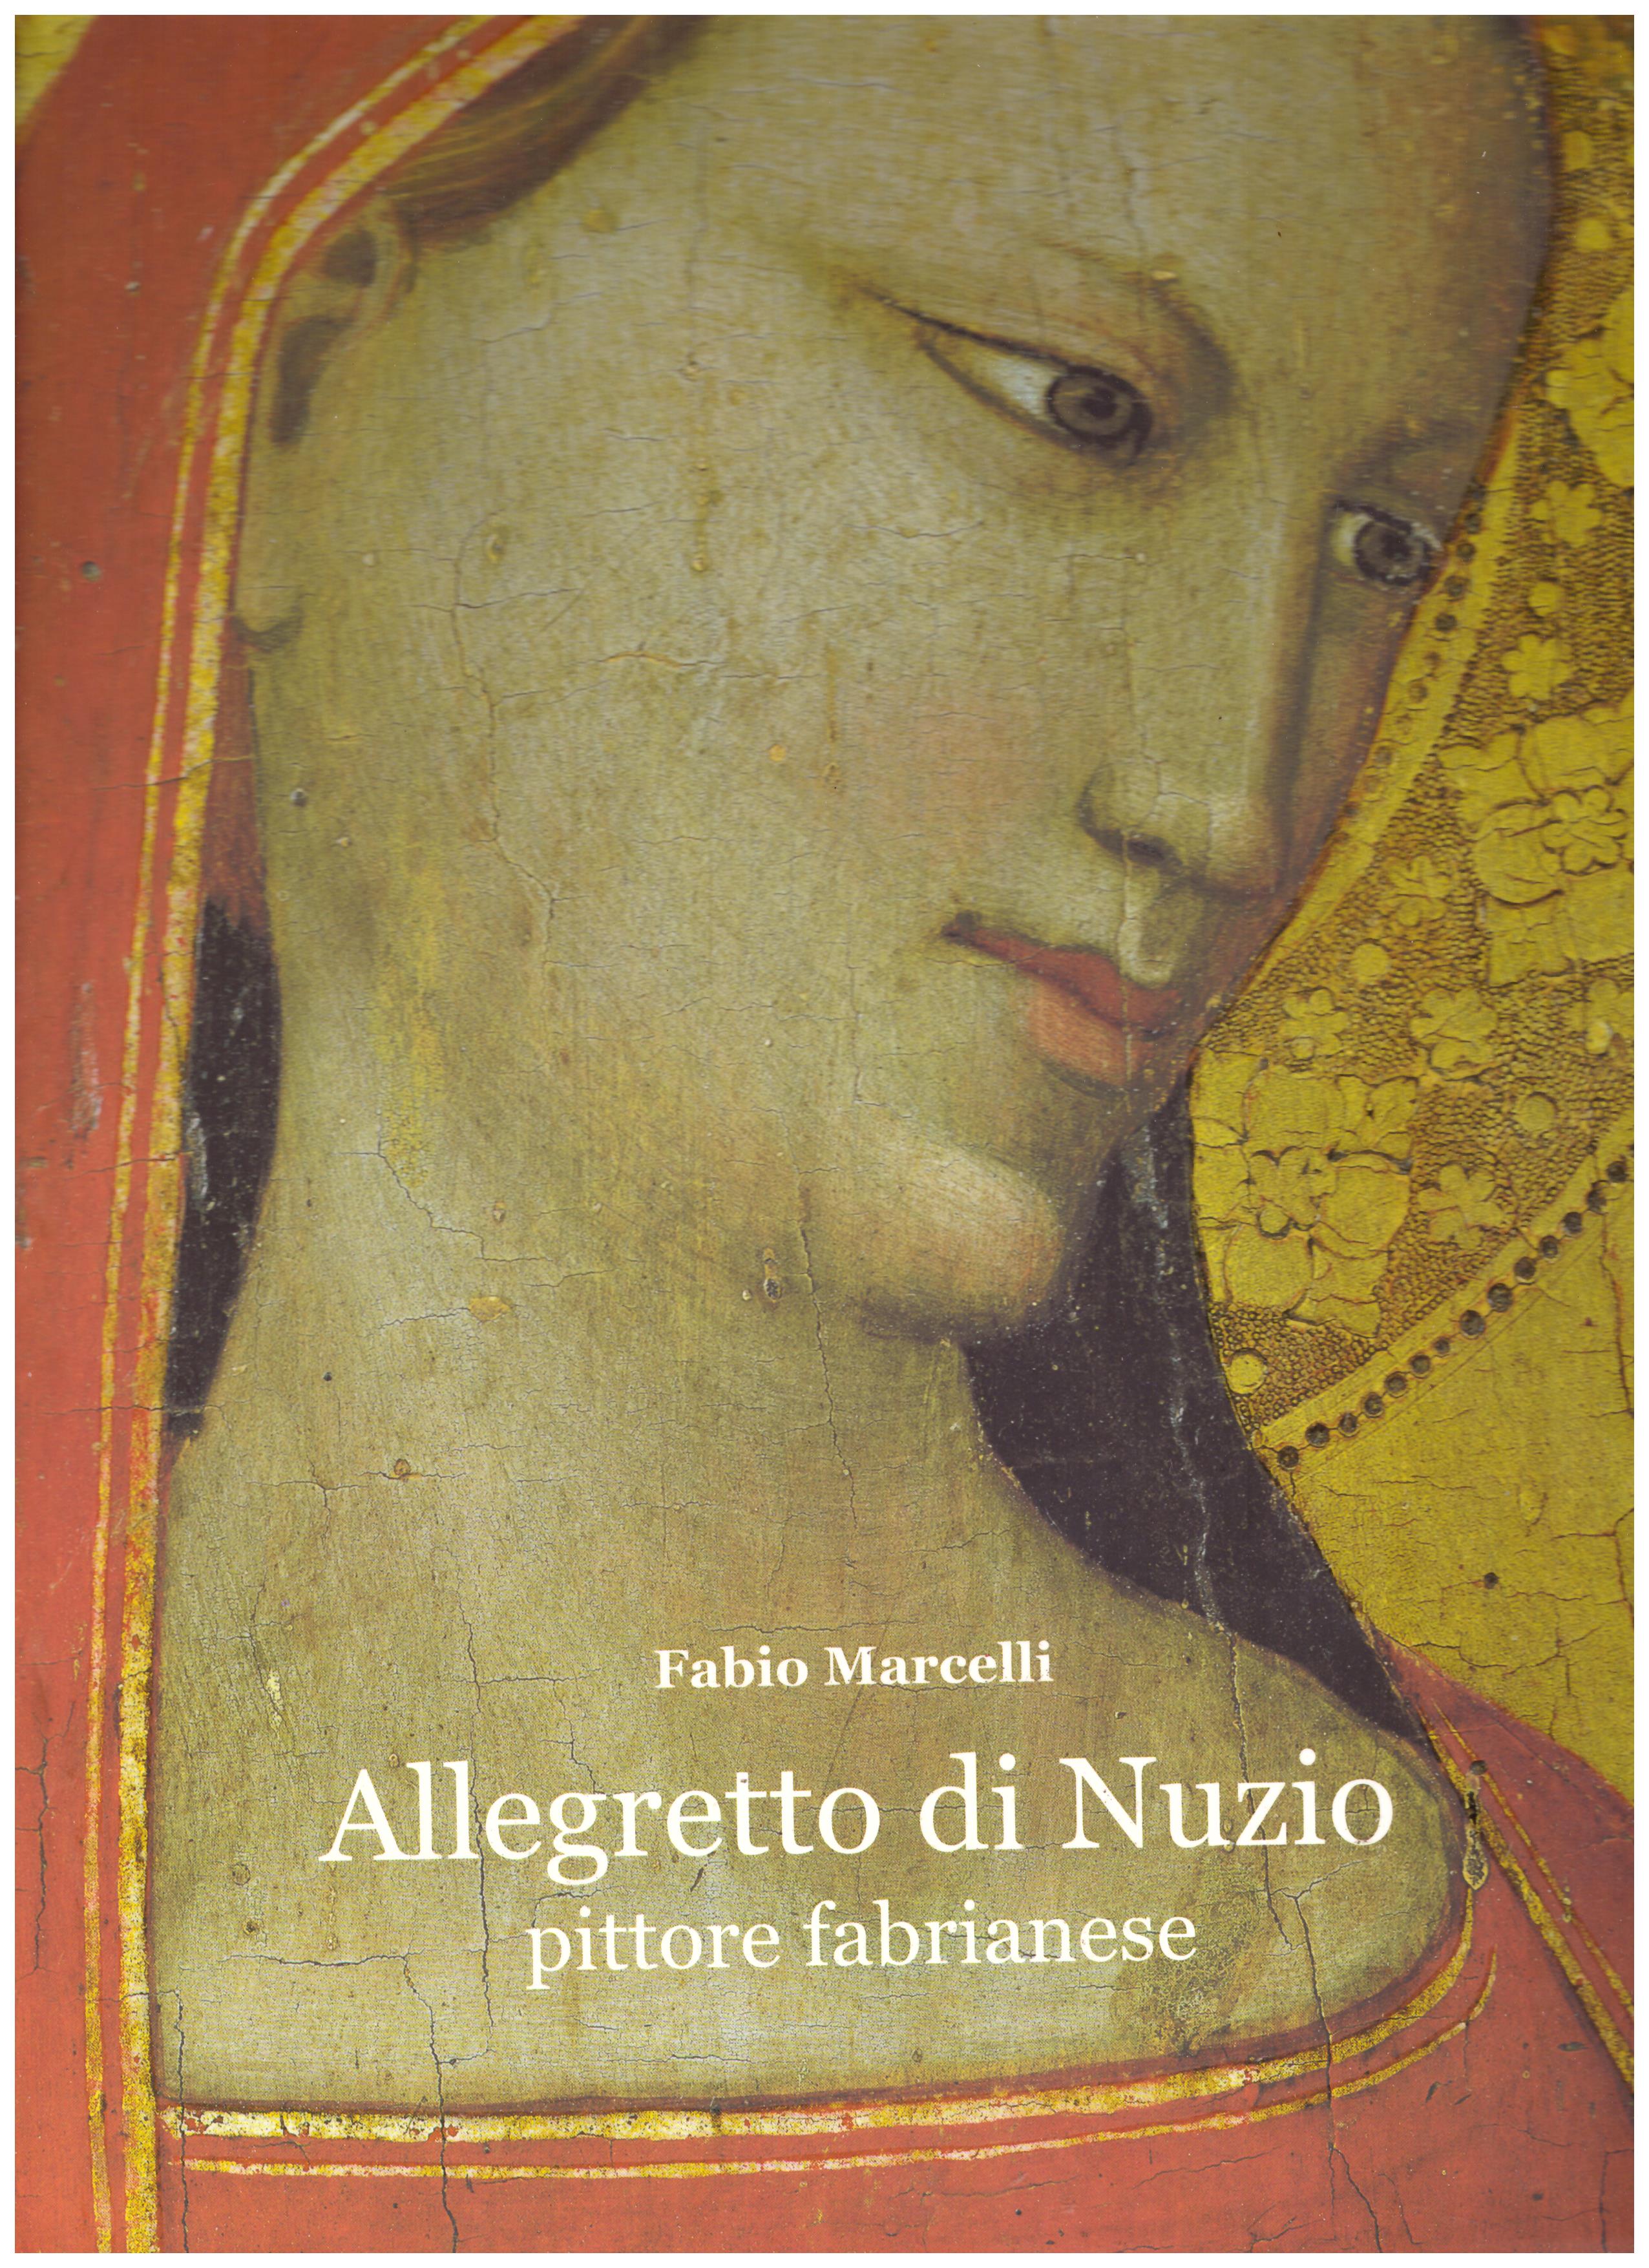 Titolo: Allegretto di Nuzio pittore fabrianese     Autore: Fabio Marcelli    Editore: Tipografia fabrianese, 2004